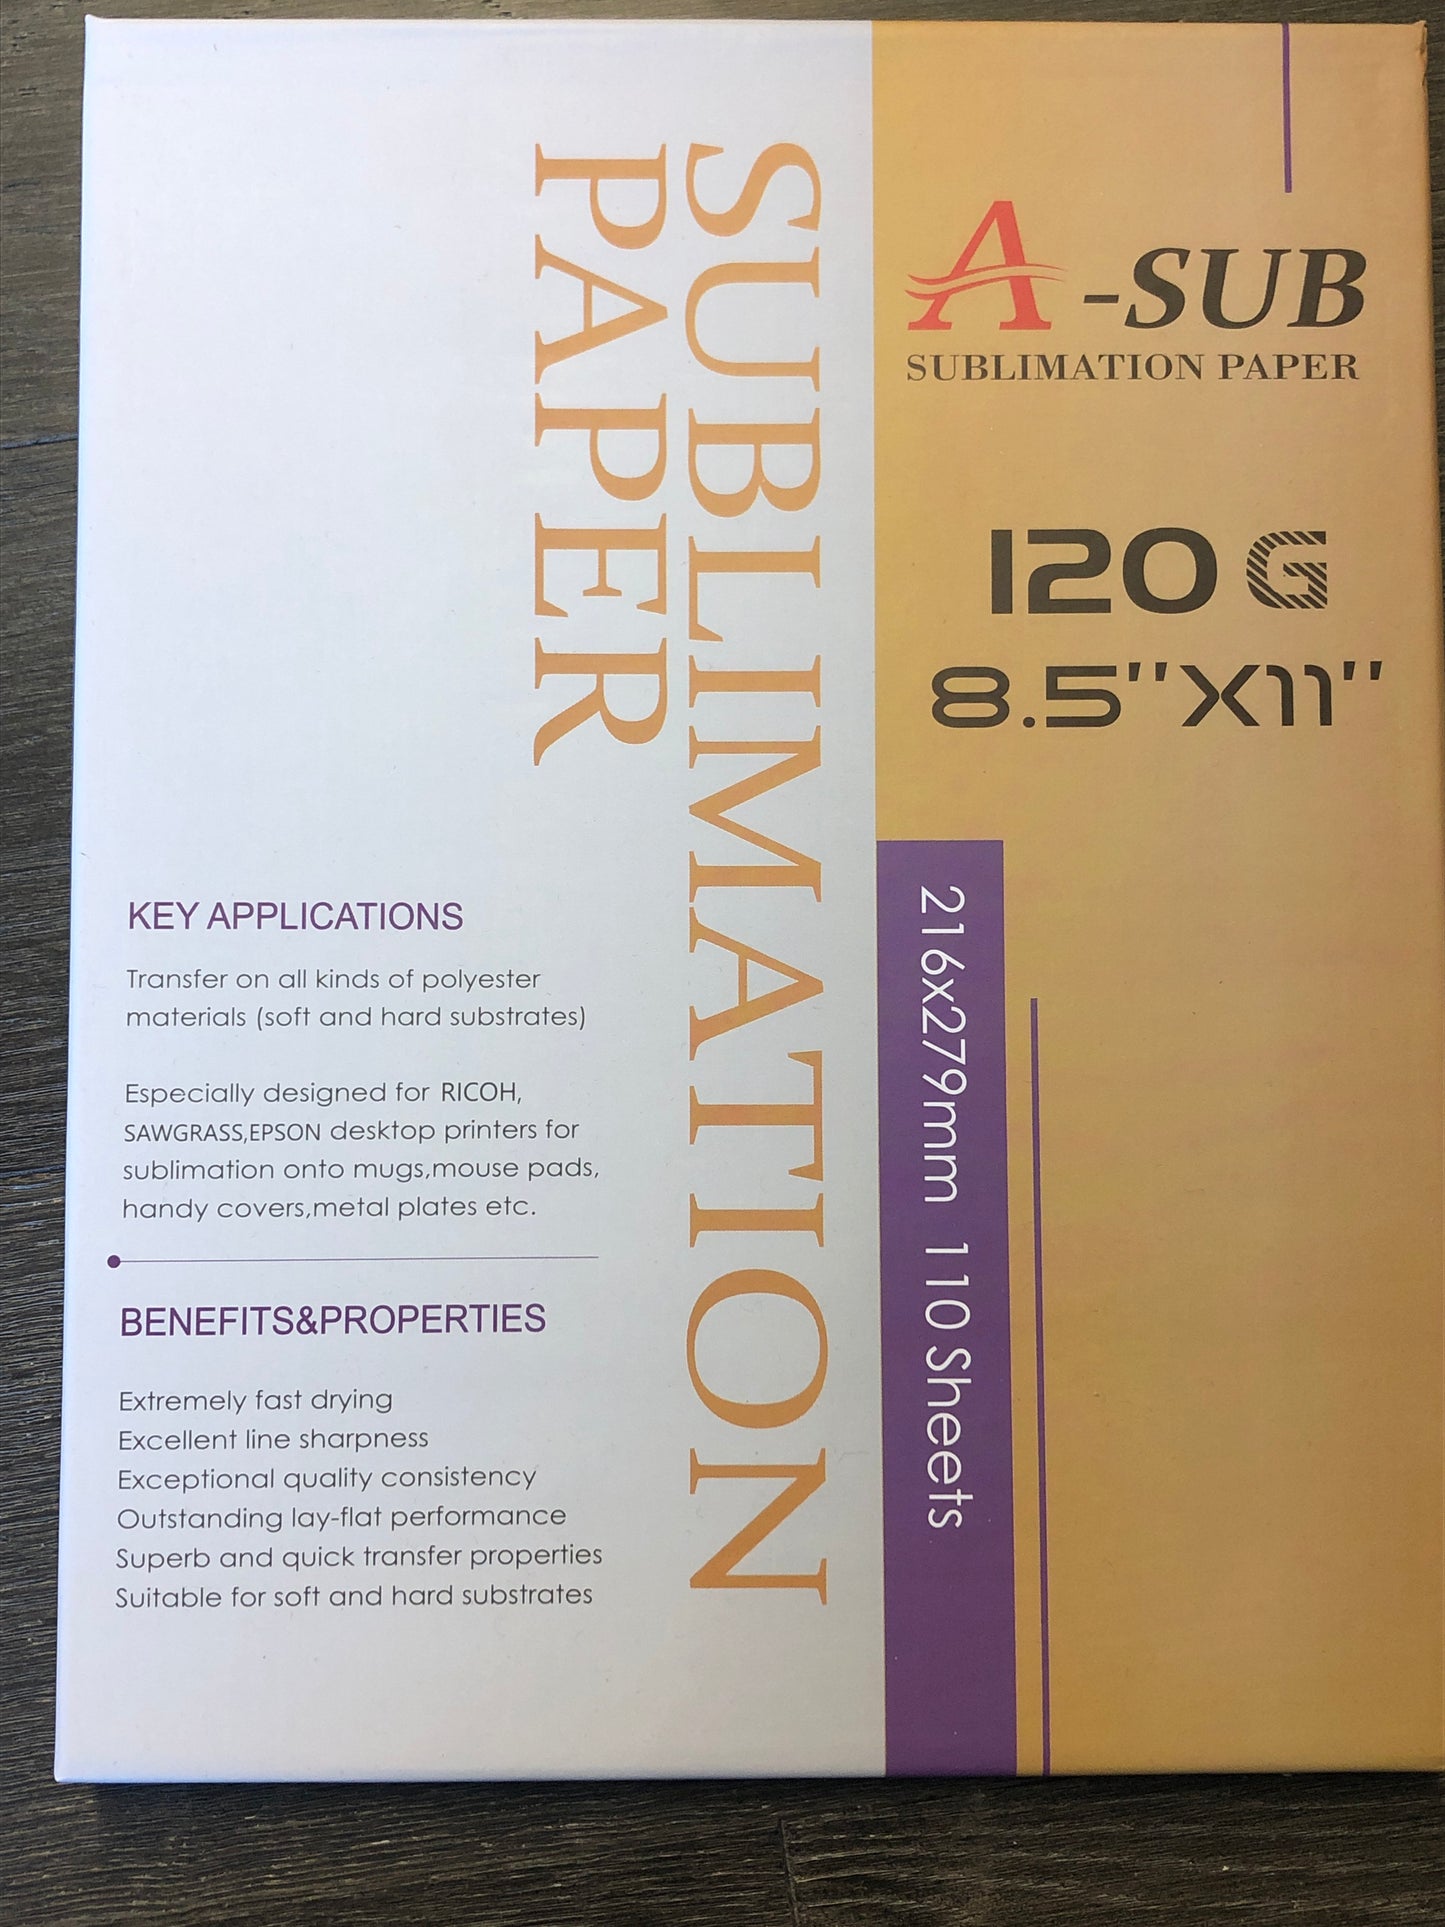 A - SUB 120 Sublimation Paper